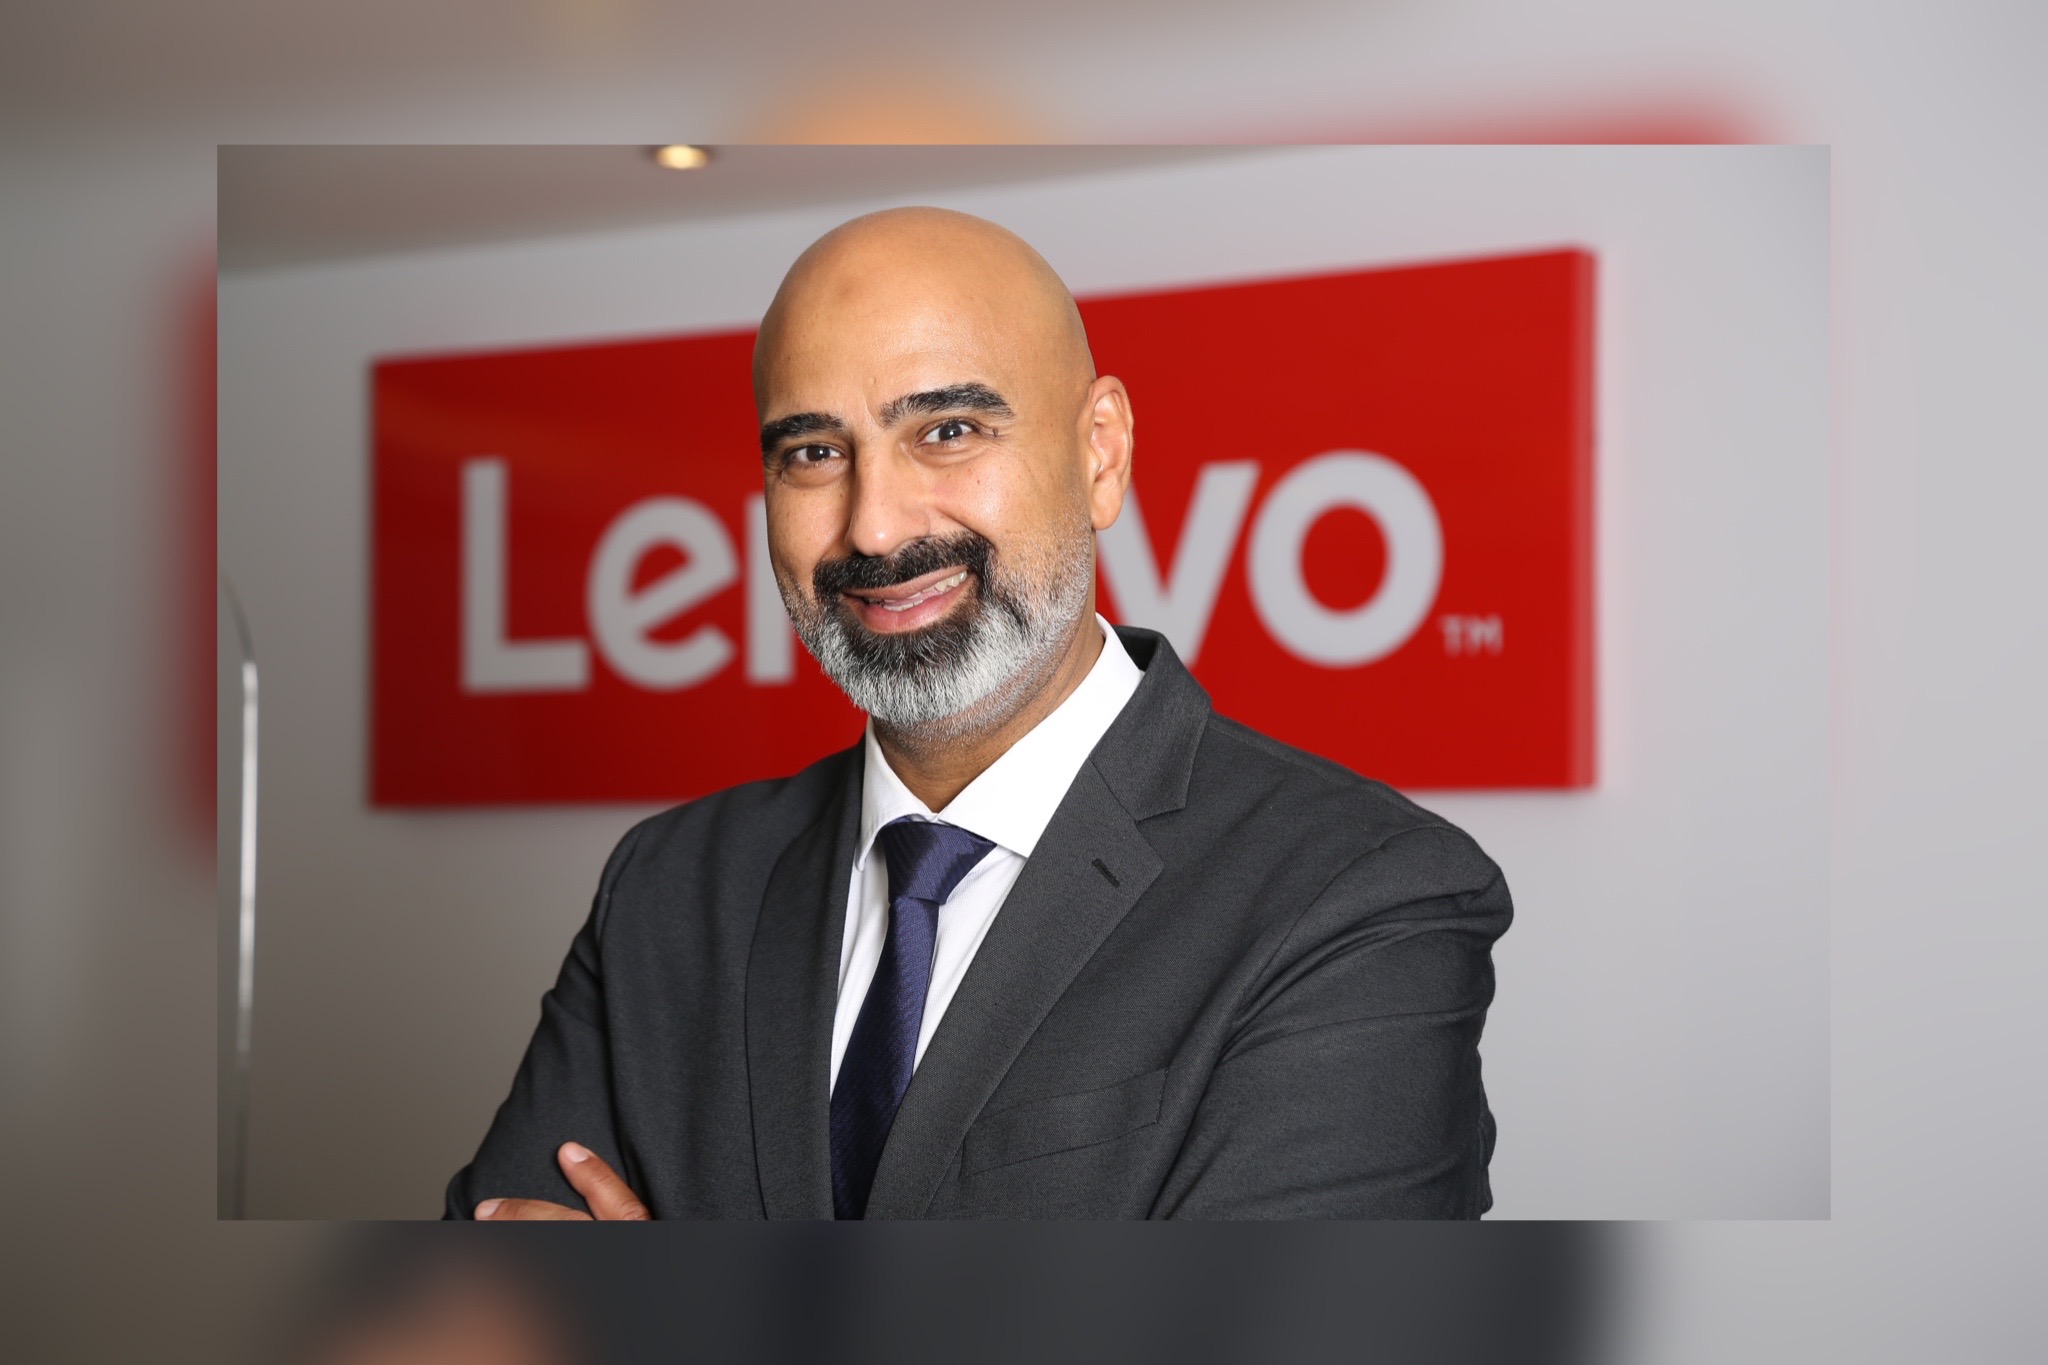 Alaa Bawab, Lenovo